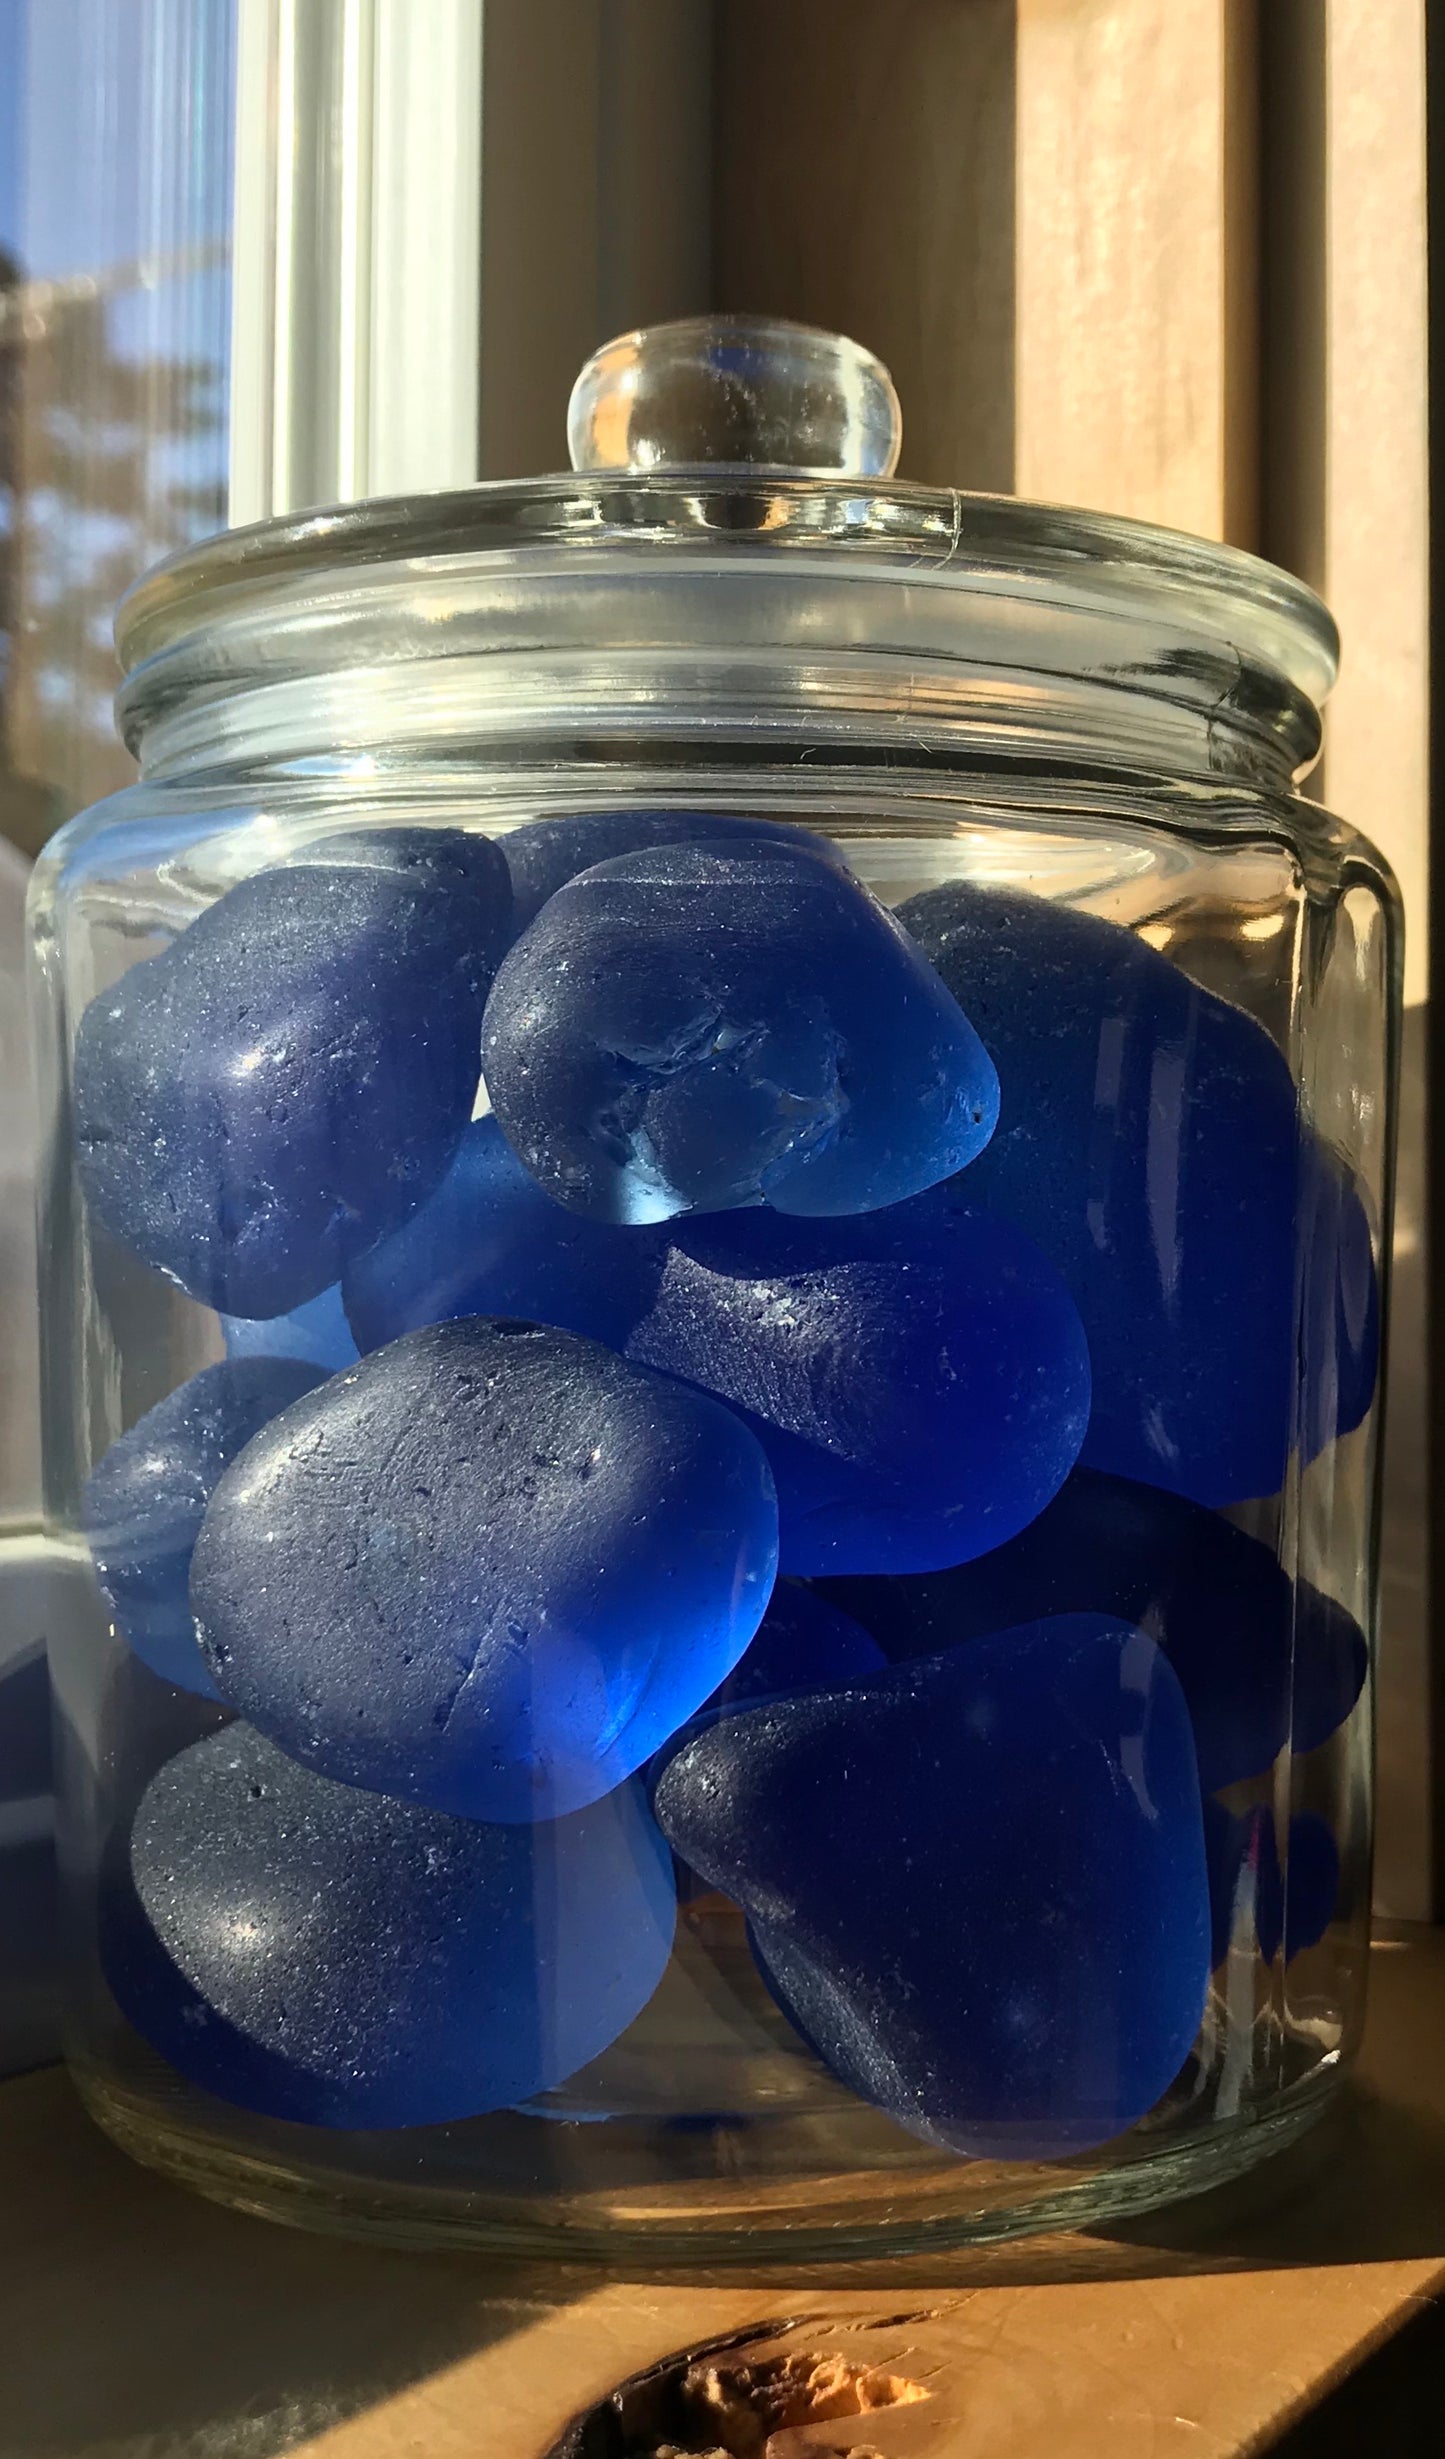 Cobalt/Denim Blue tumbles